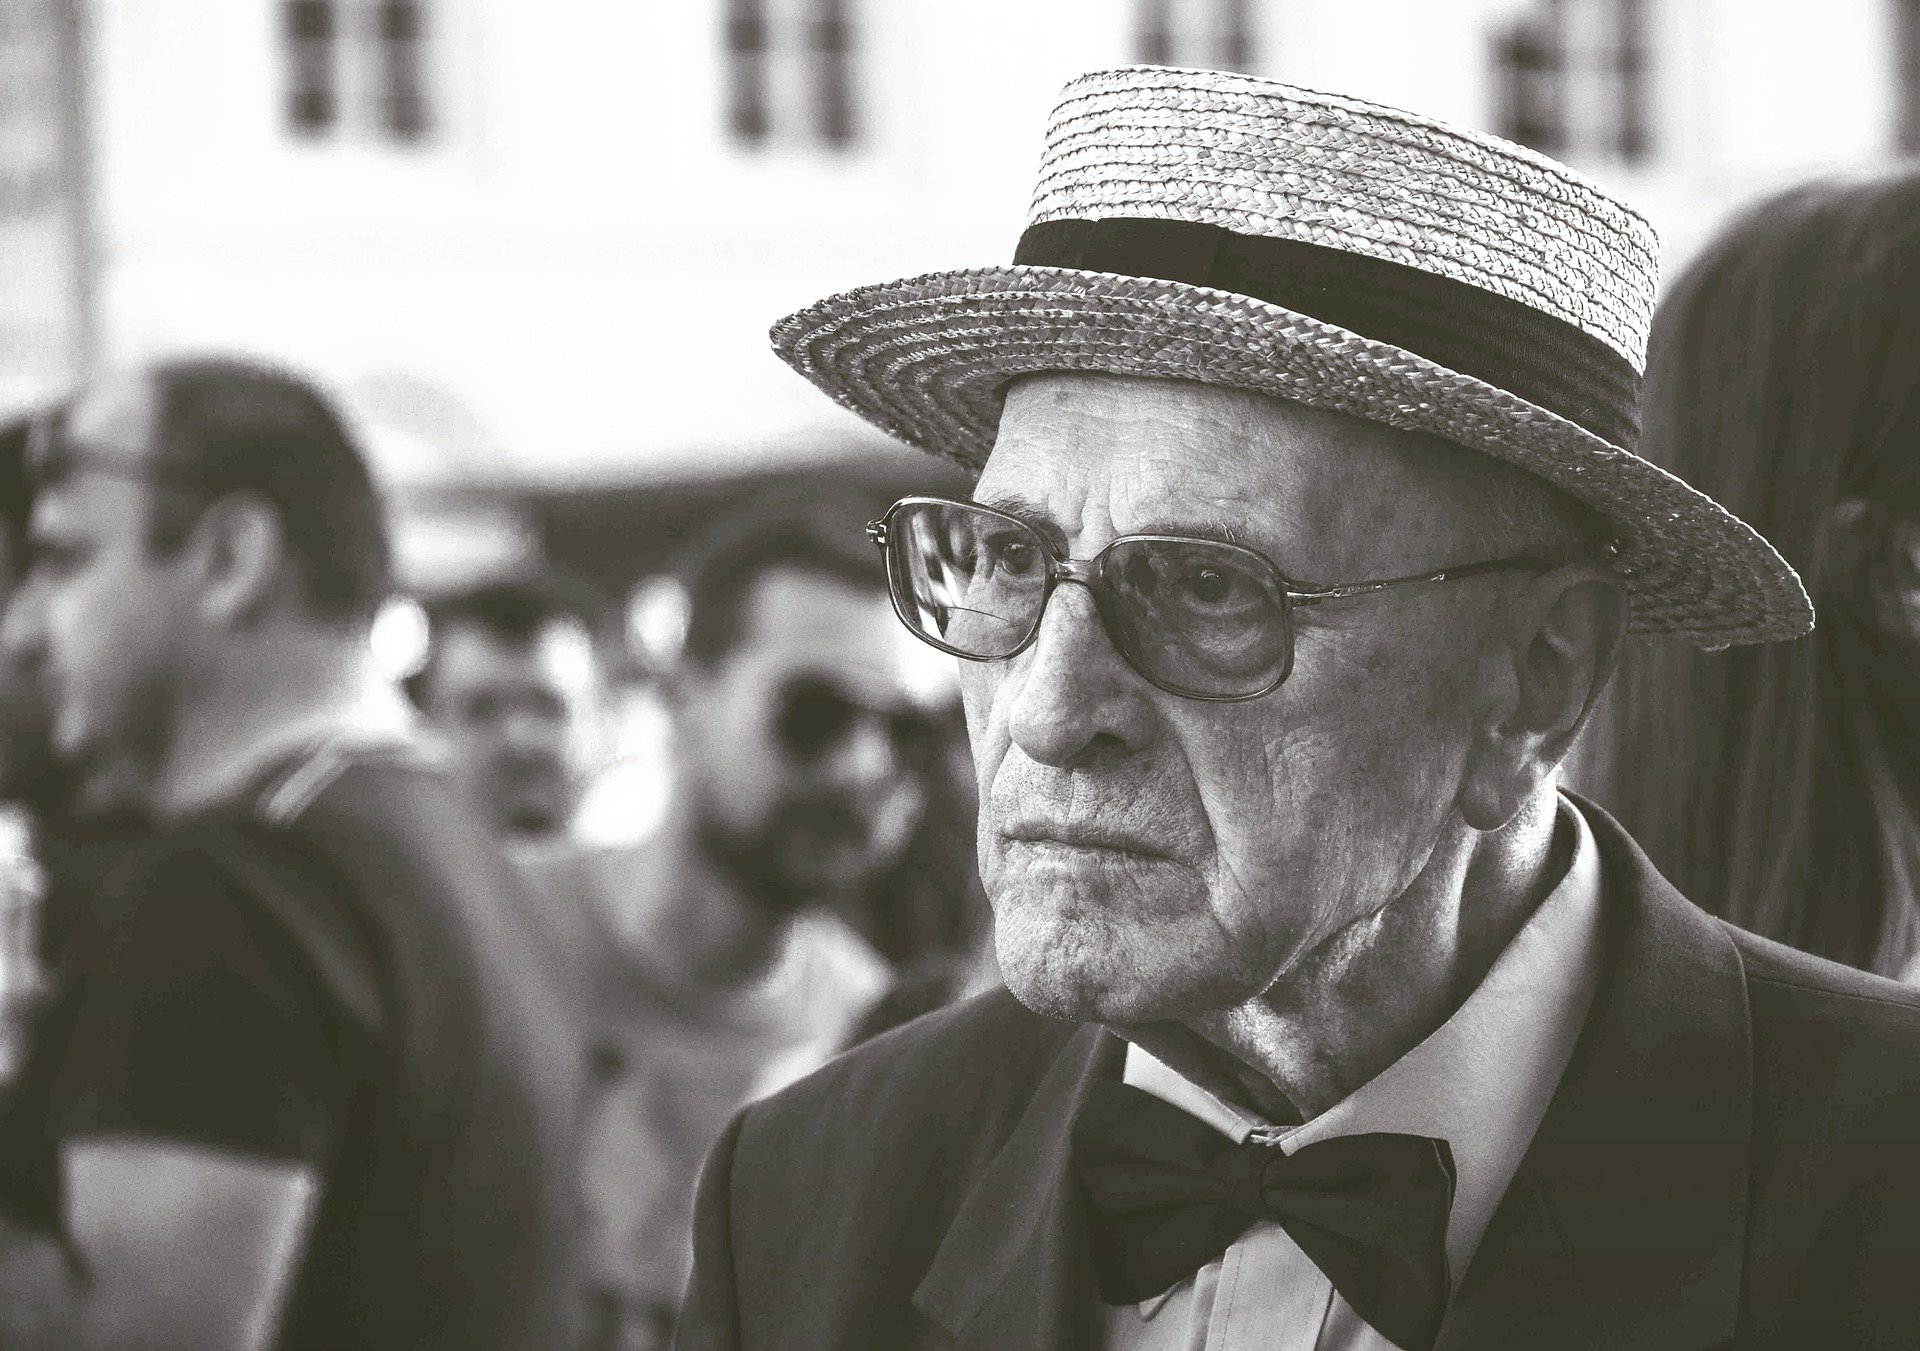 Old man | Source: Pixabay